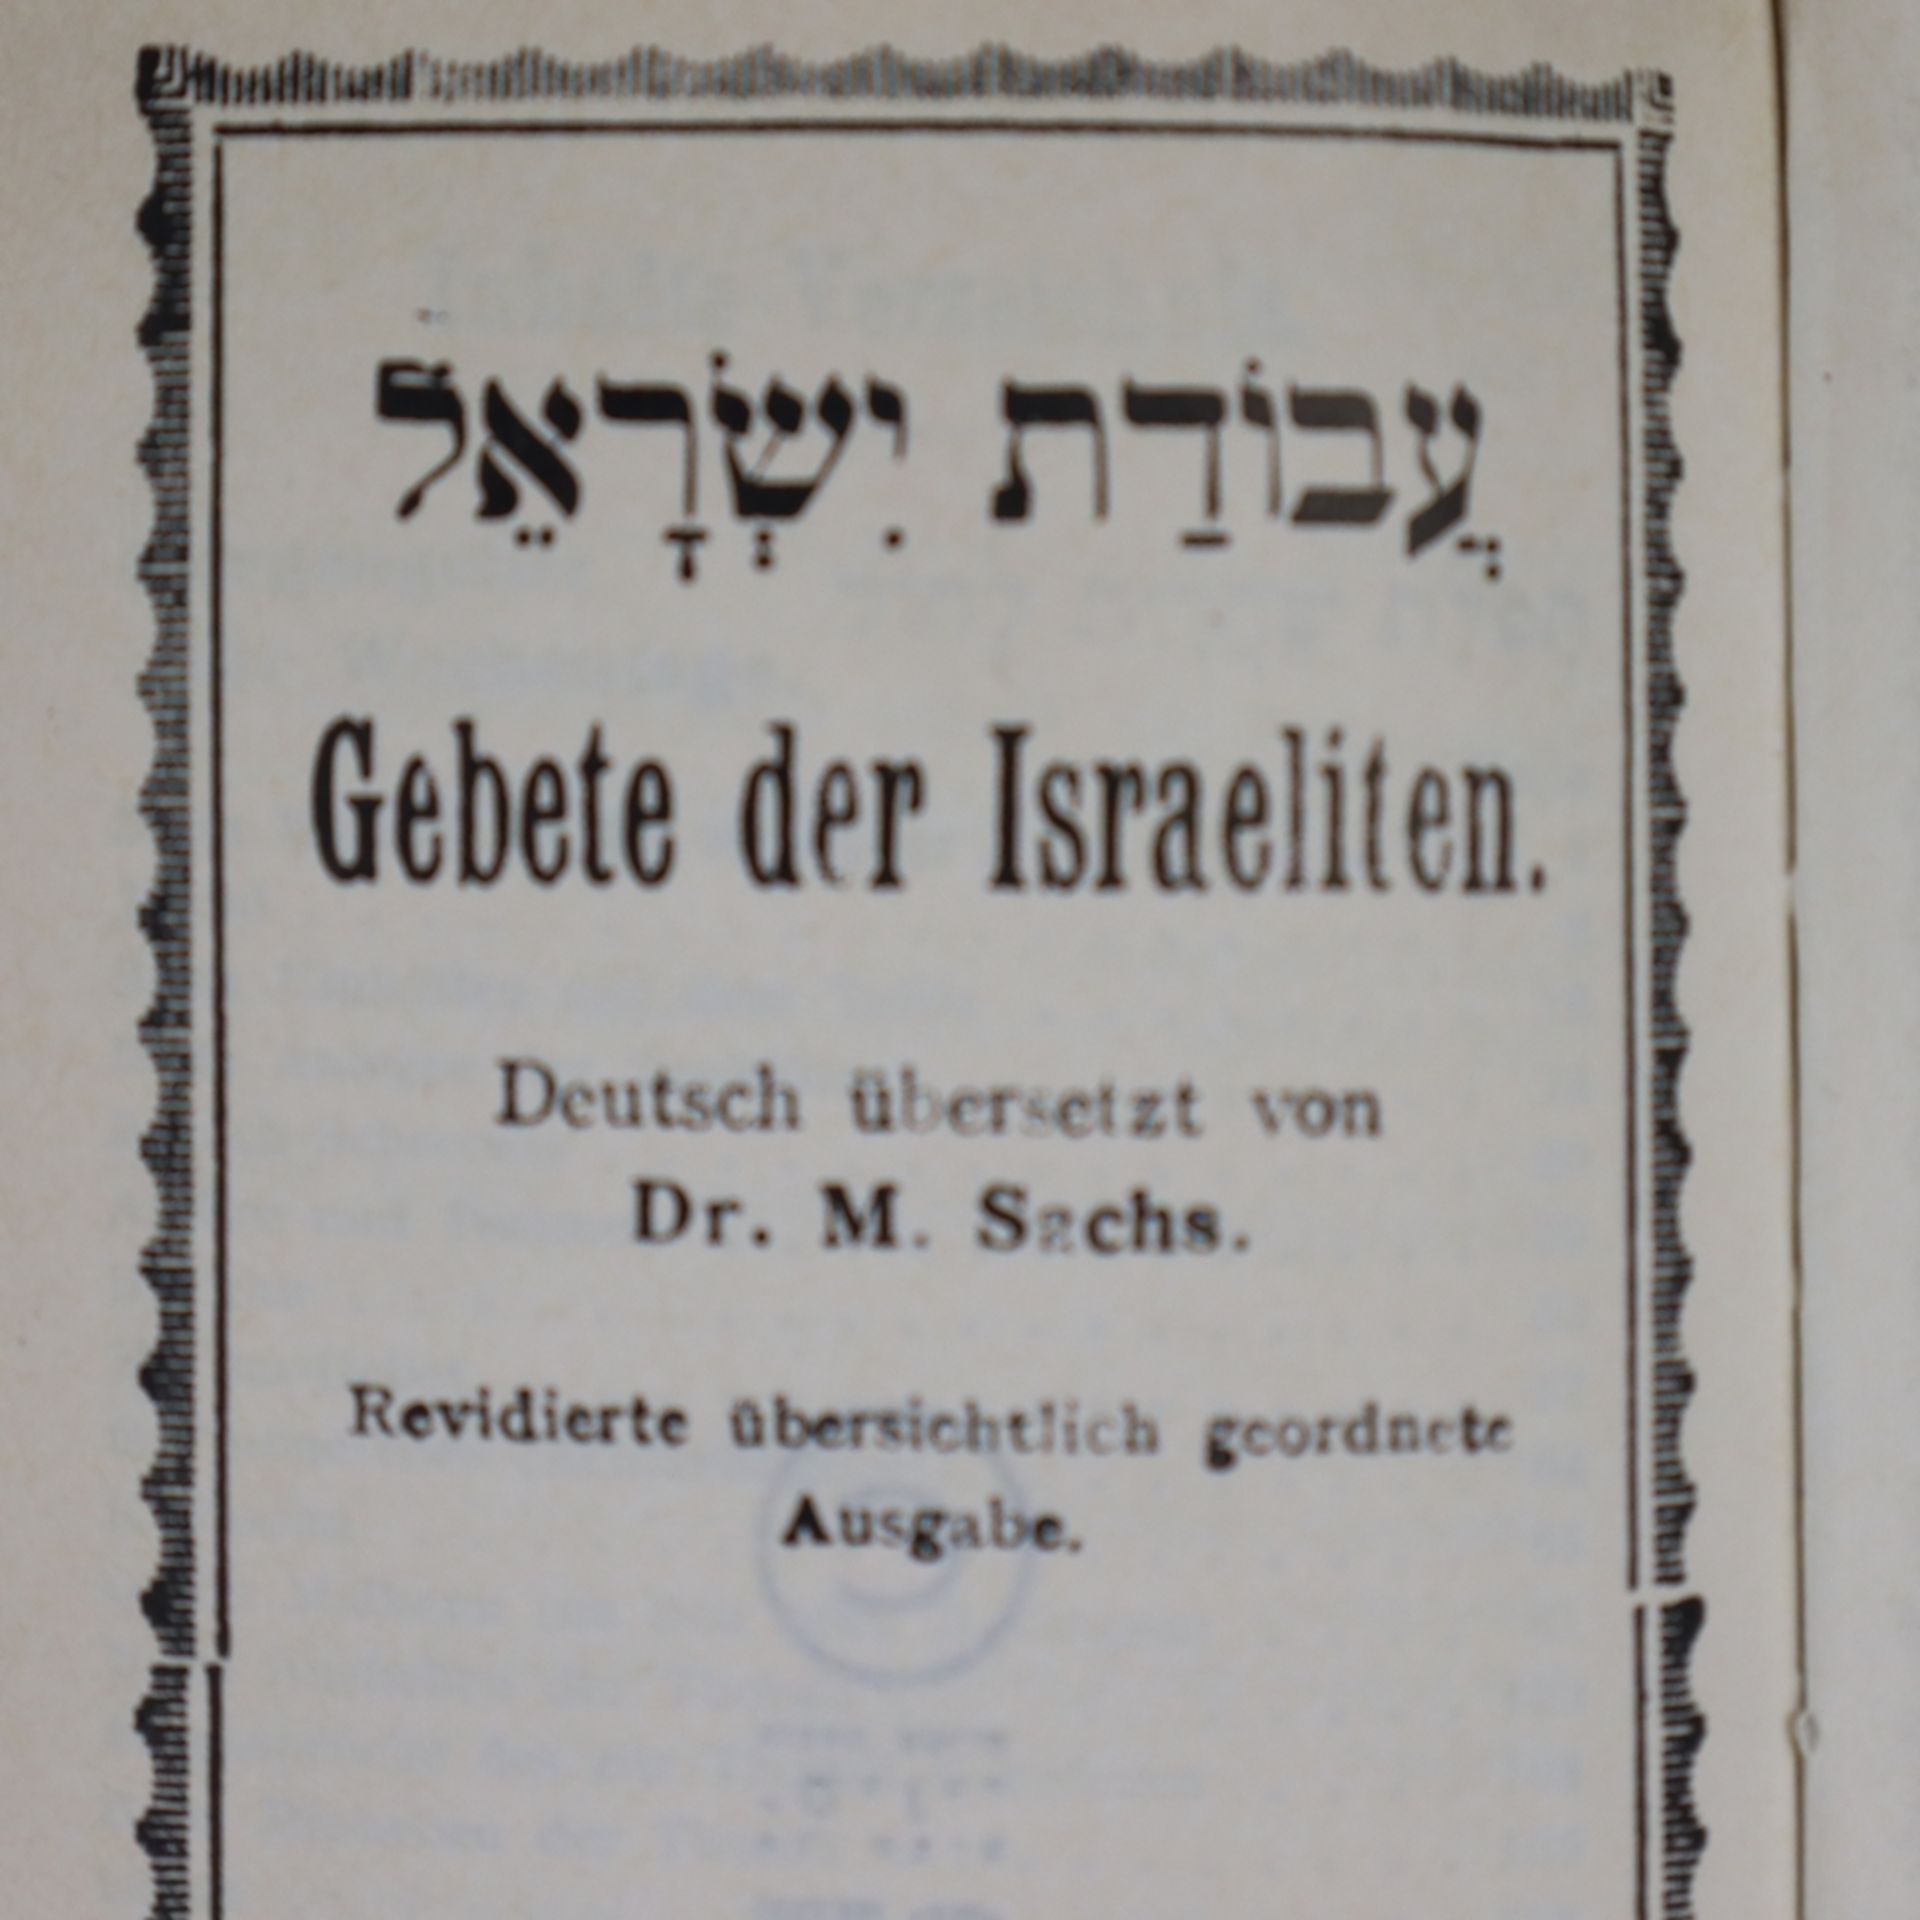 Judaica/Sachs, Dr. Michael - Gebete der Israeliten, Israel, 1980, 364 Doppelseiten, in Deutsch und - Bild 5 aus 10